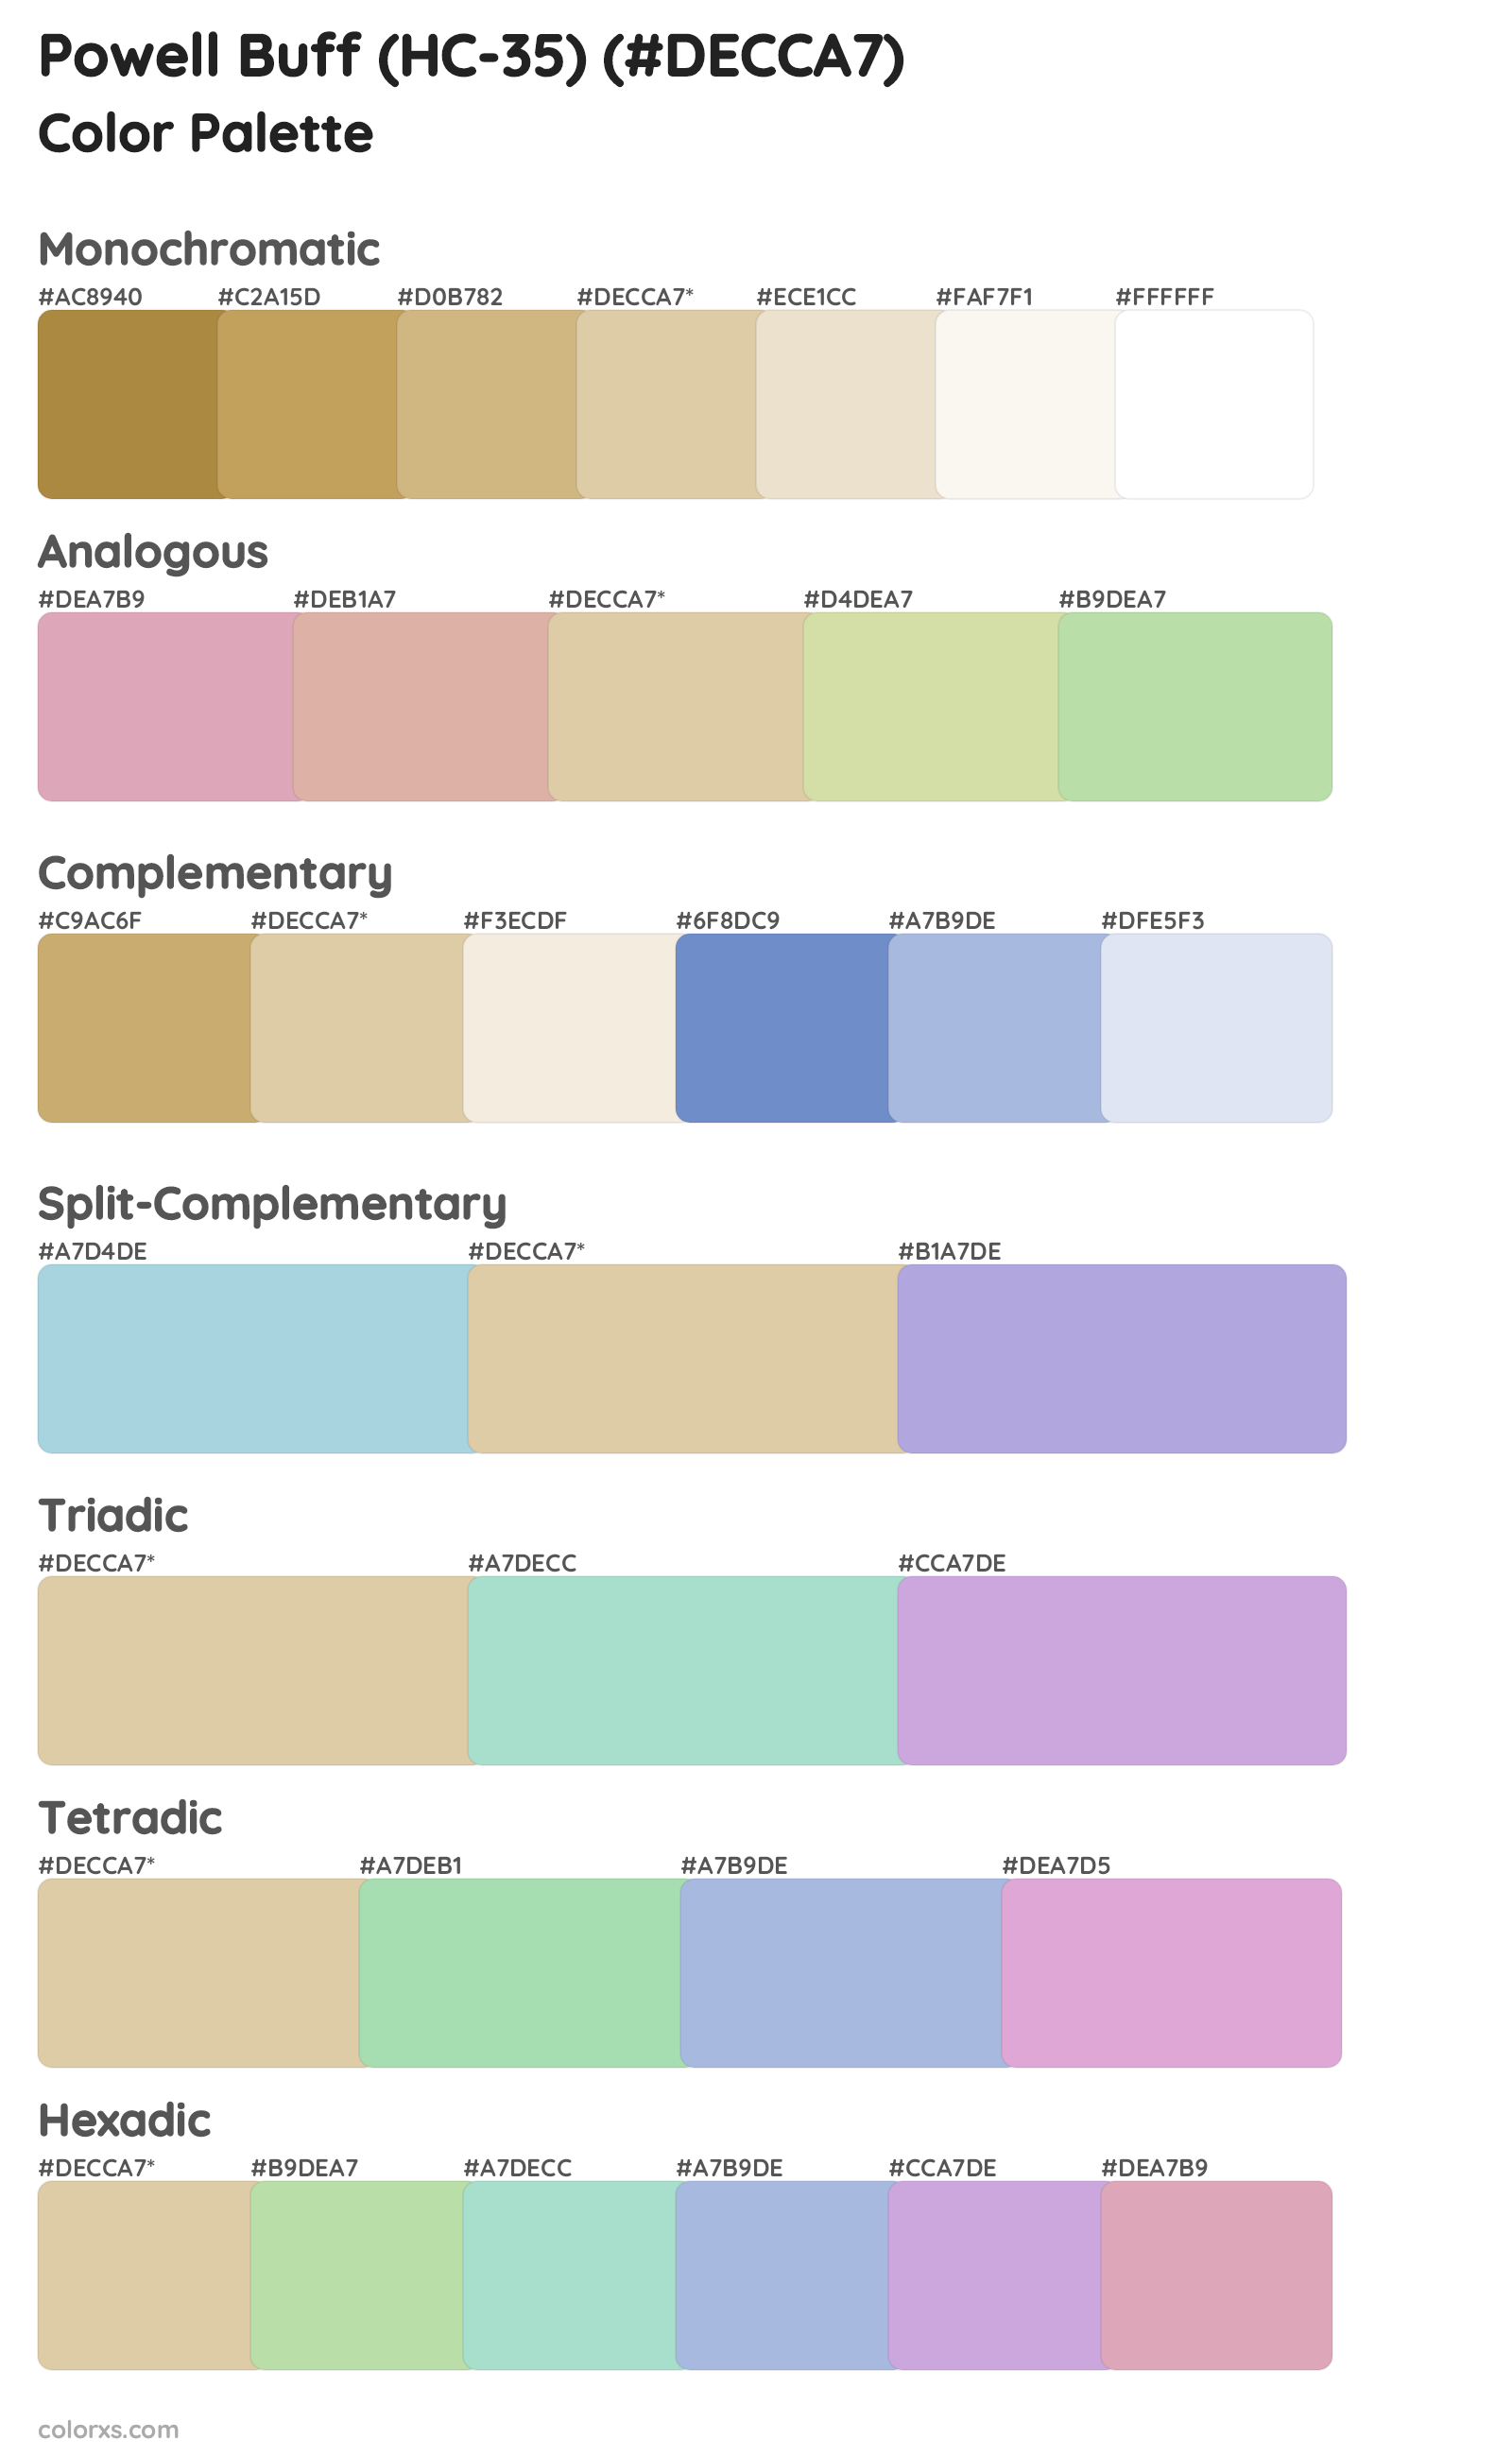 Powell Buff (HC-35) Color Scheme Palettes